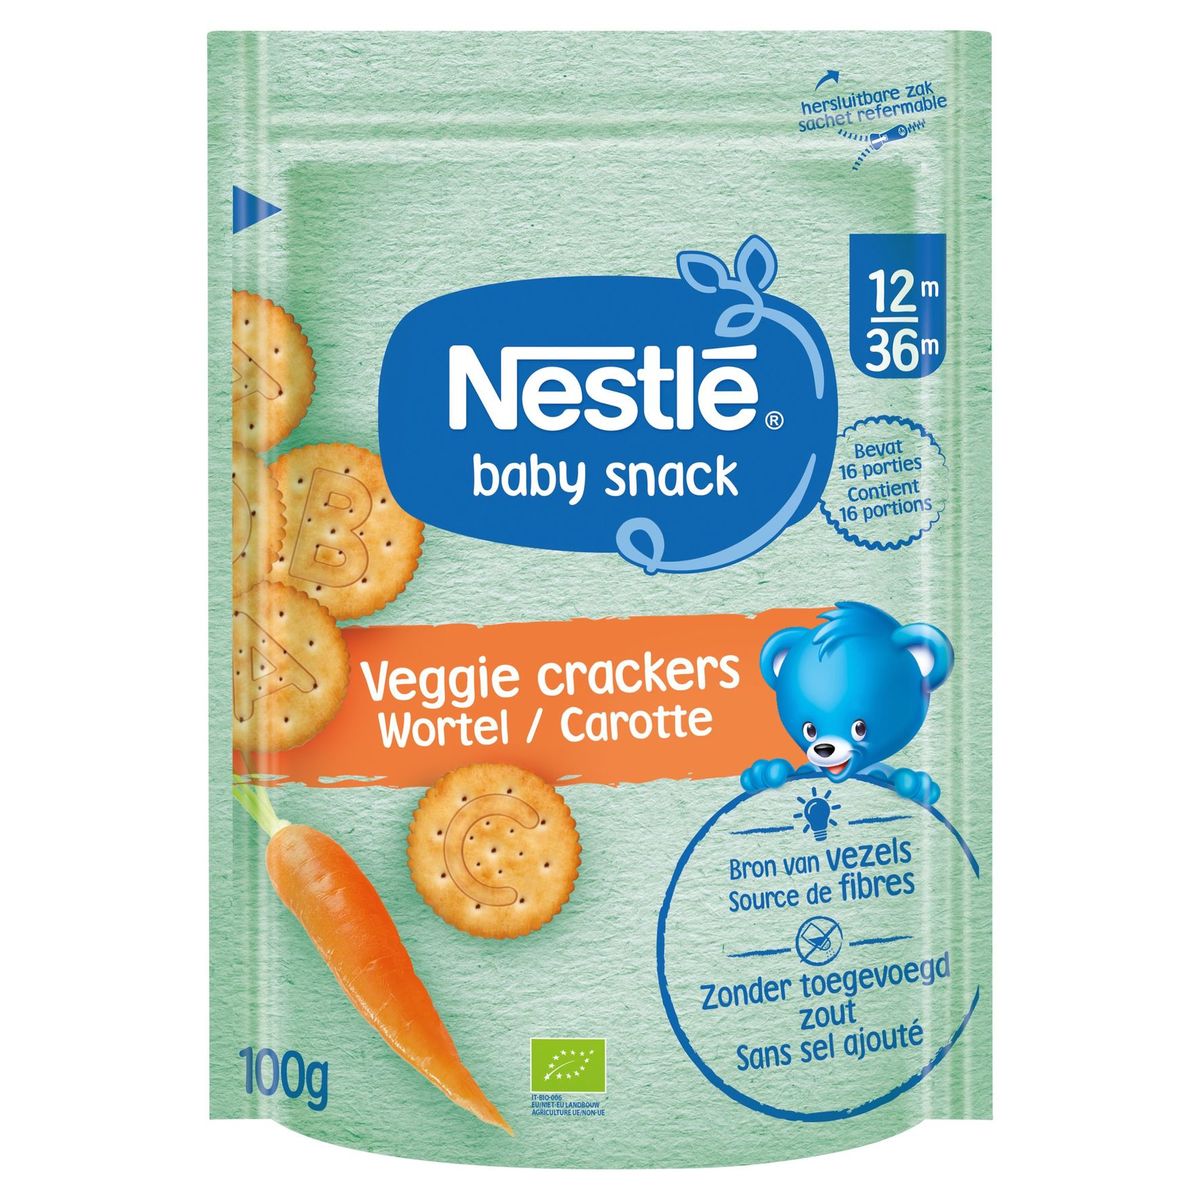 Nestlé Baby Snack Veggie Cracker Wortel vanaf 12 maanden 100g